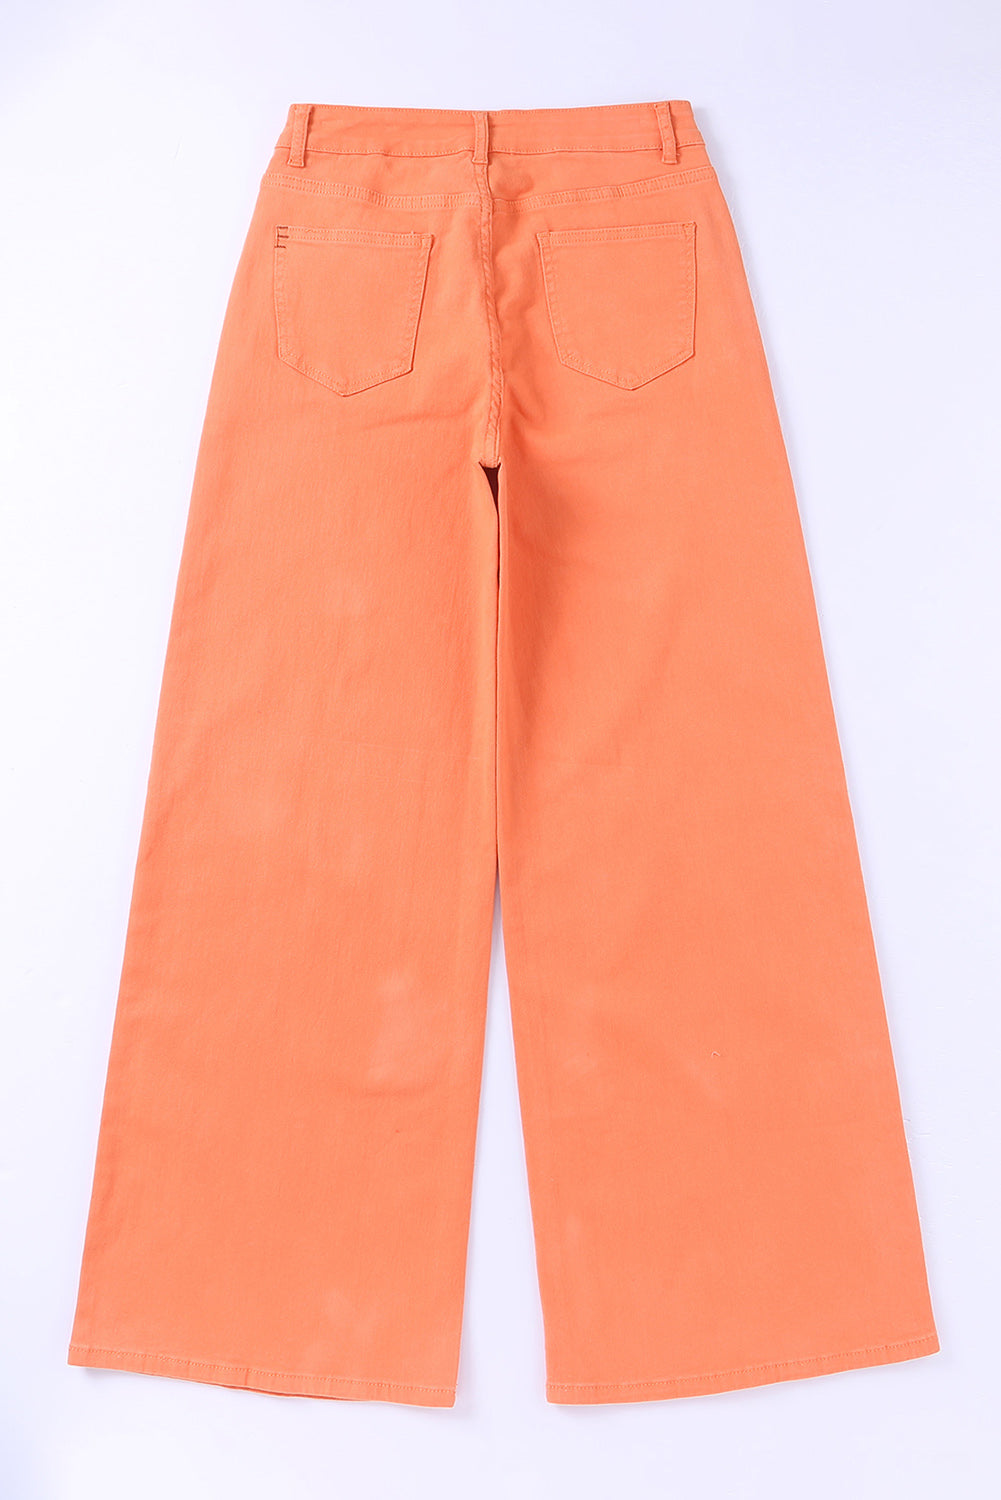 Jeans a gamba larga casual a vita alta con lavaggio acido arancione